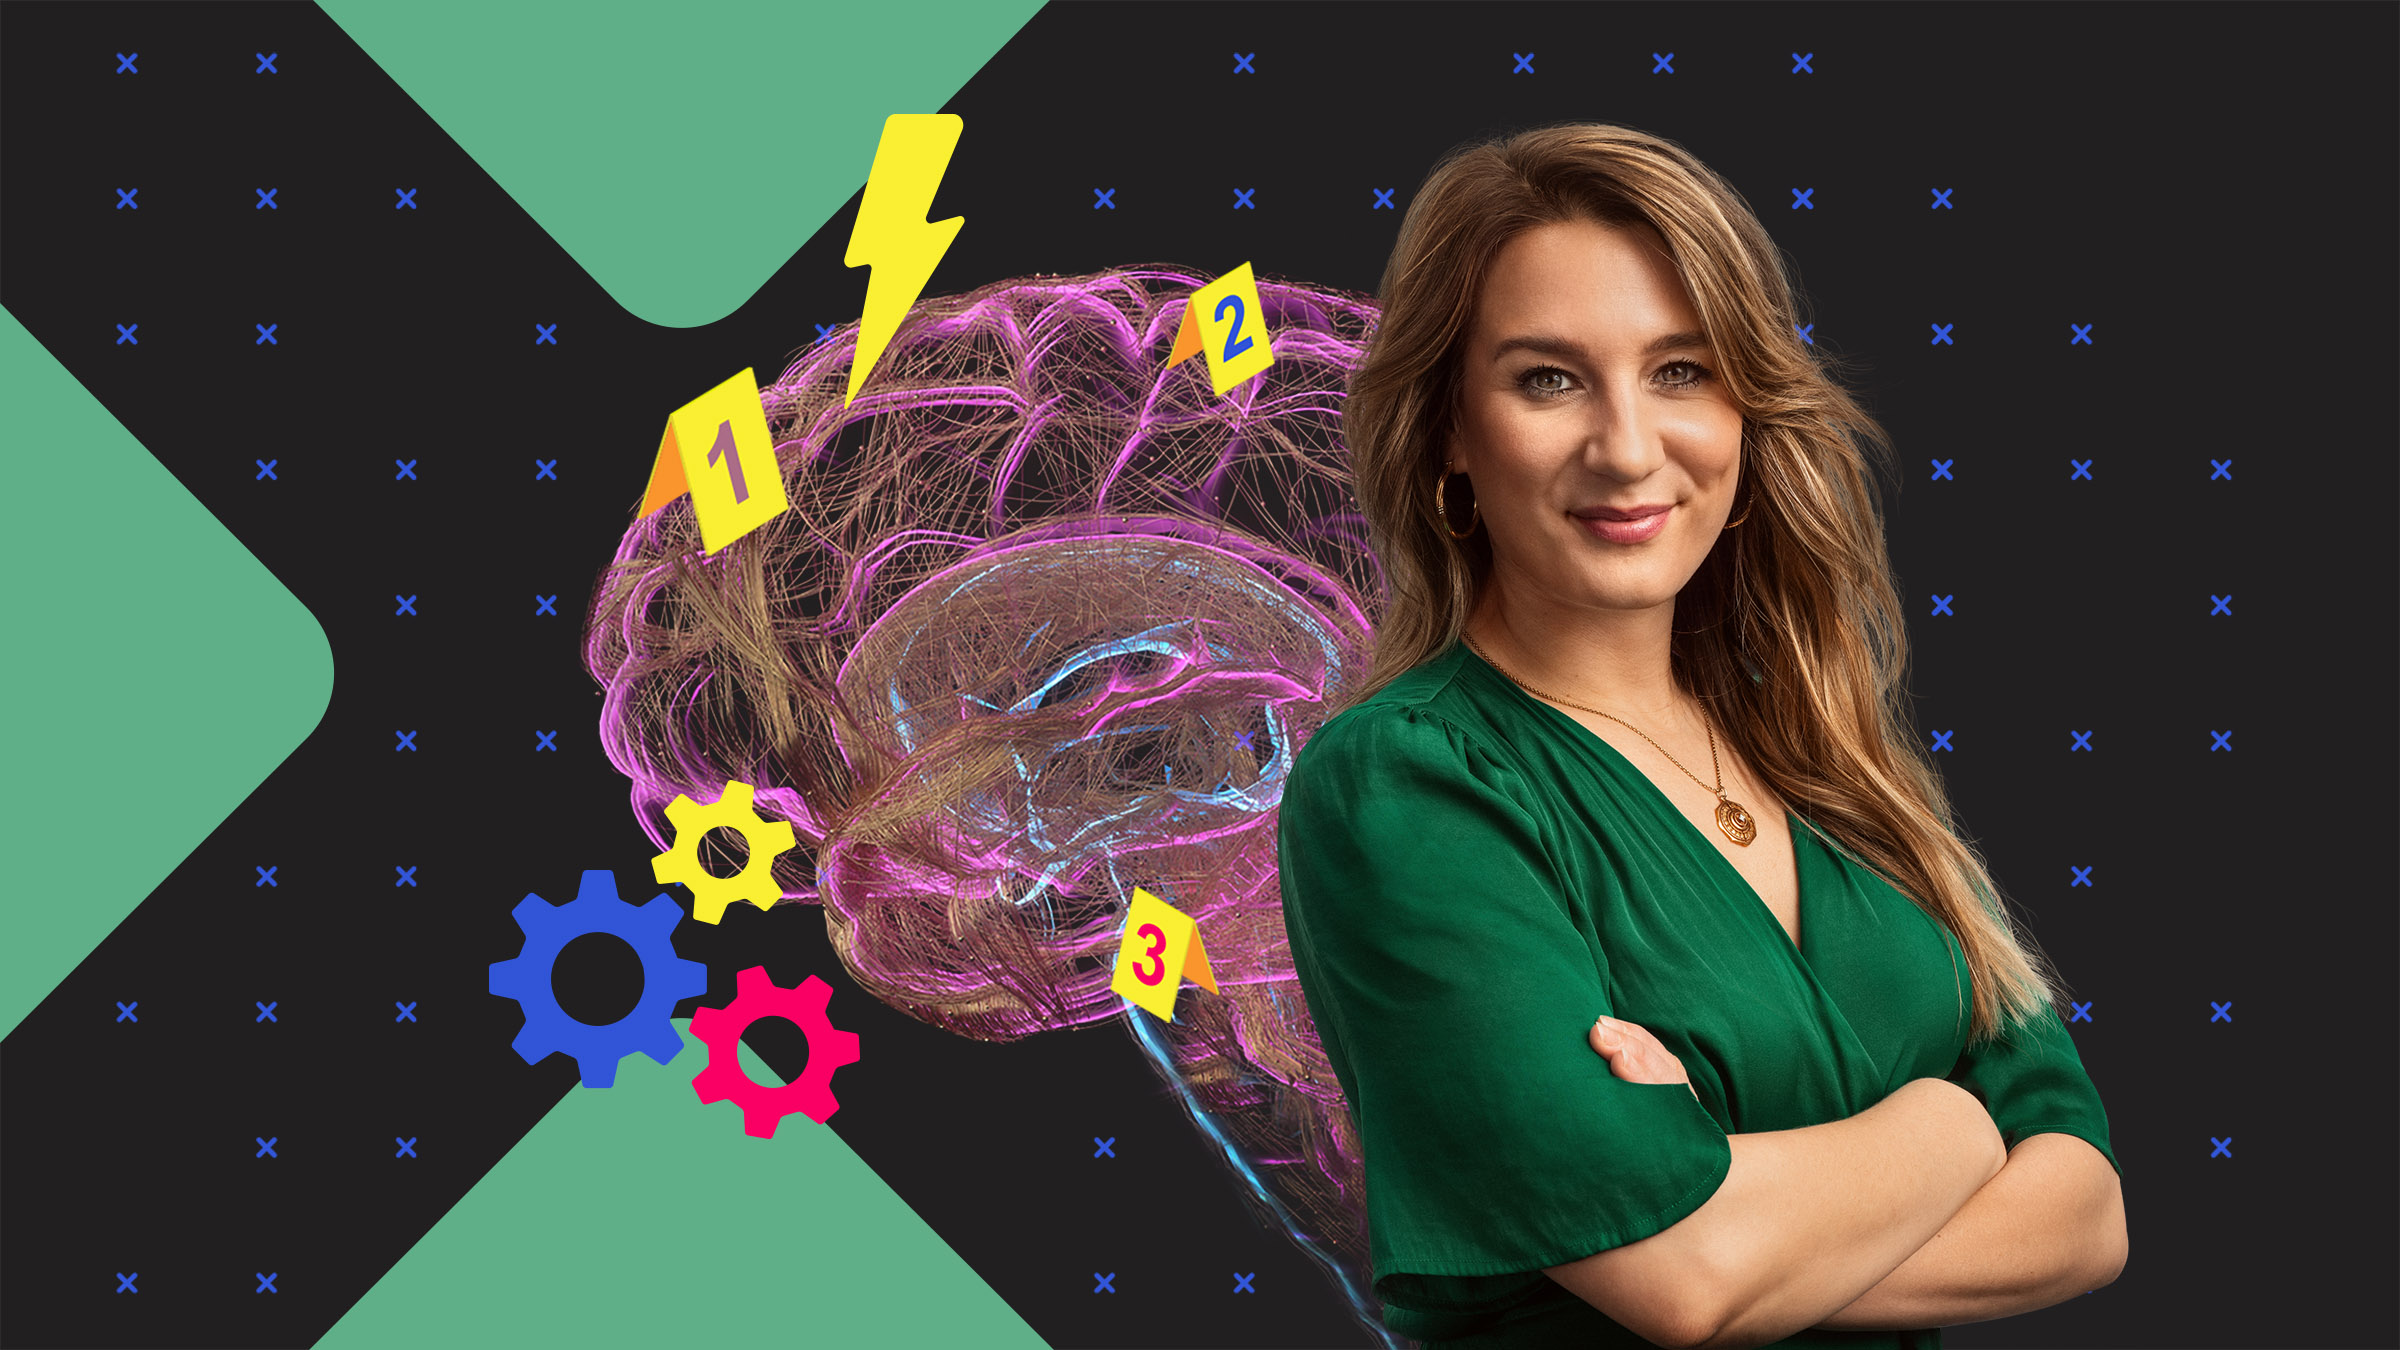 Biologin Jasmina Neudecker lächelt, neben ihr ist grafisch ein Gehirn mit Blitzen, Zahnrädern und Zahlen abgebildet.